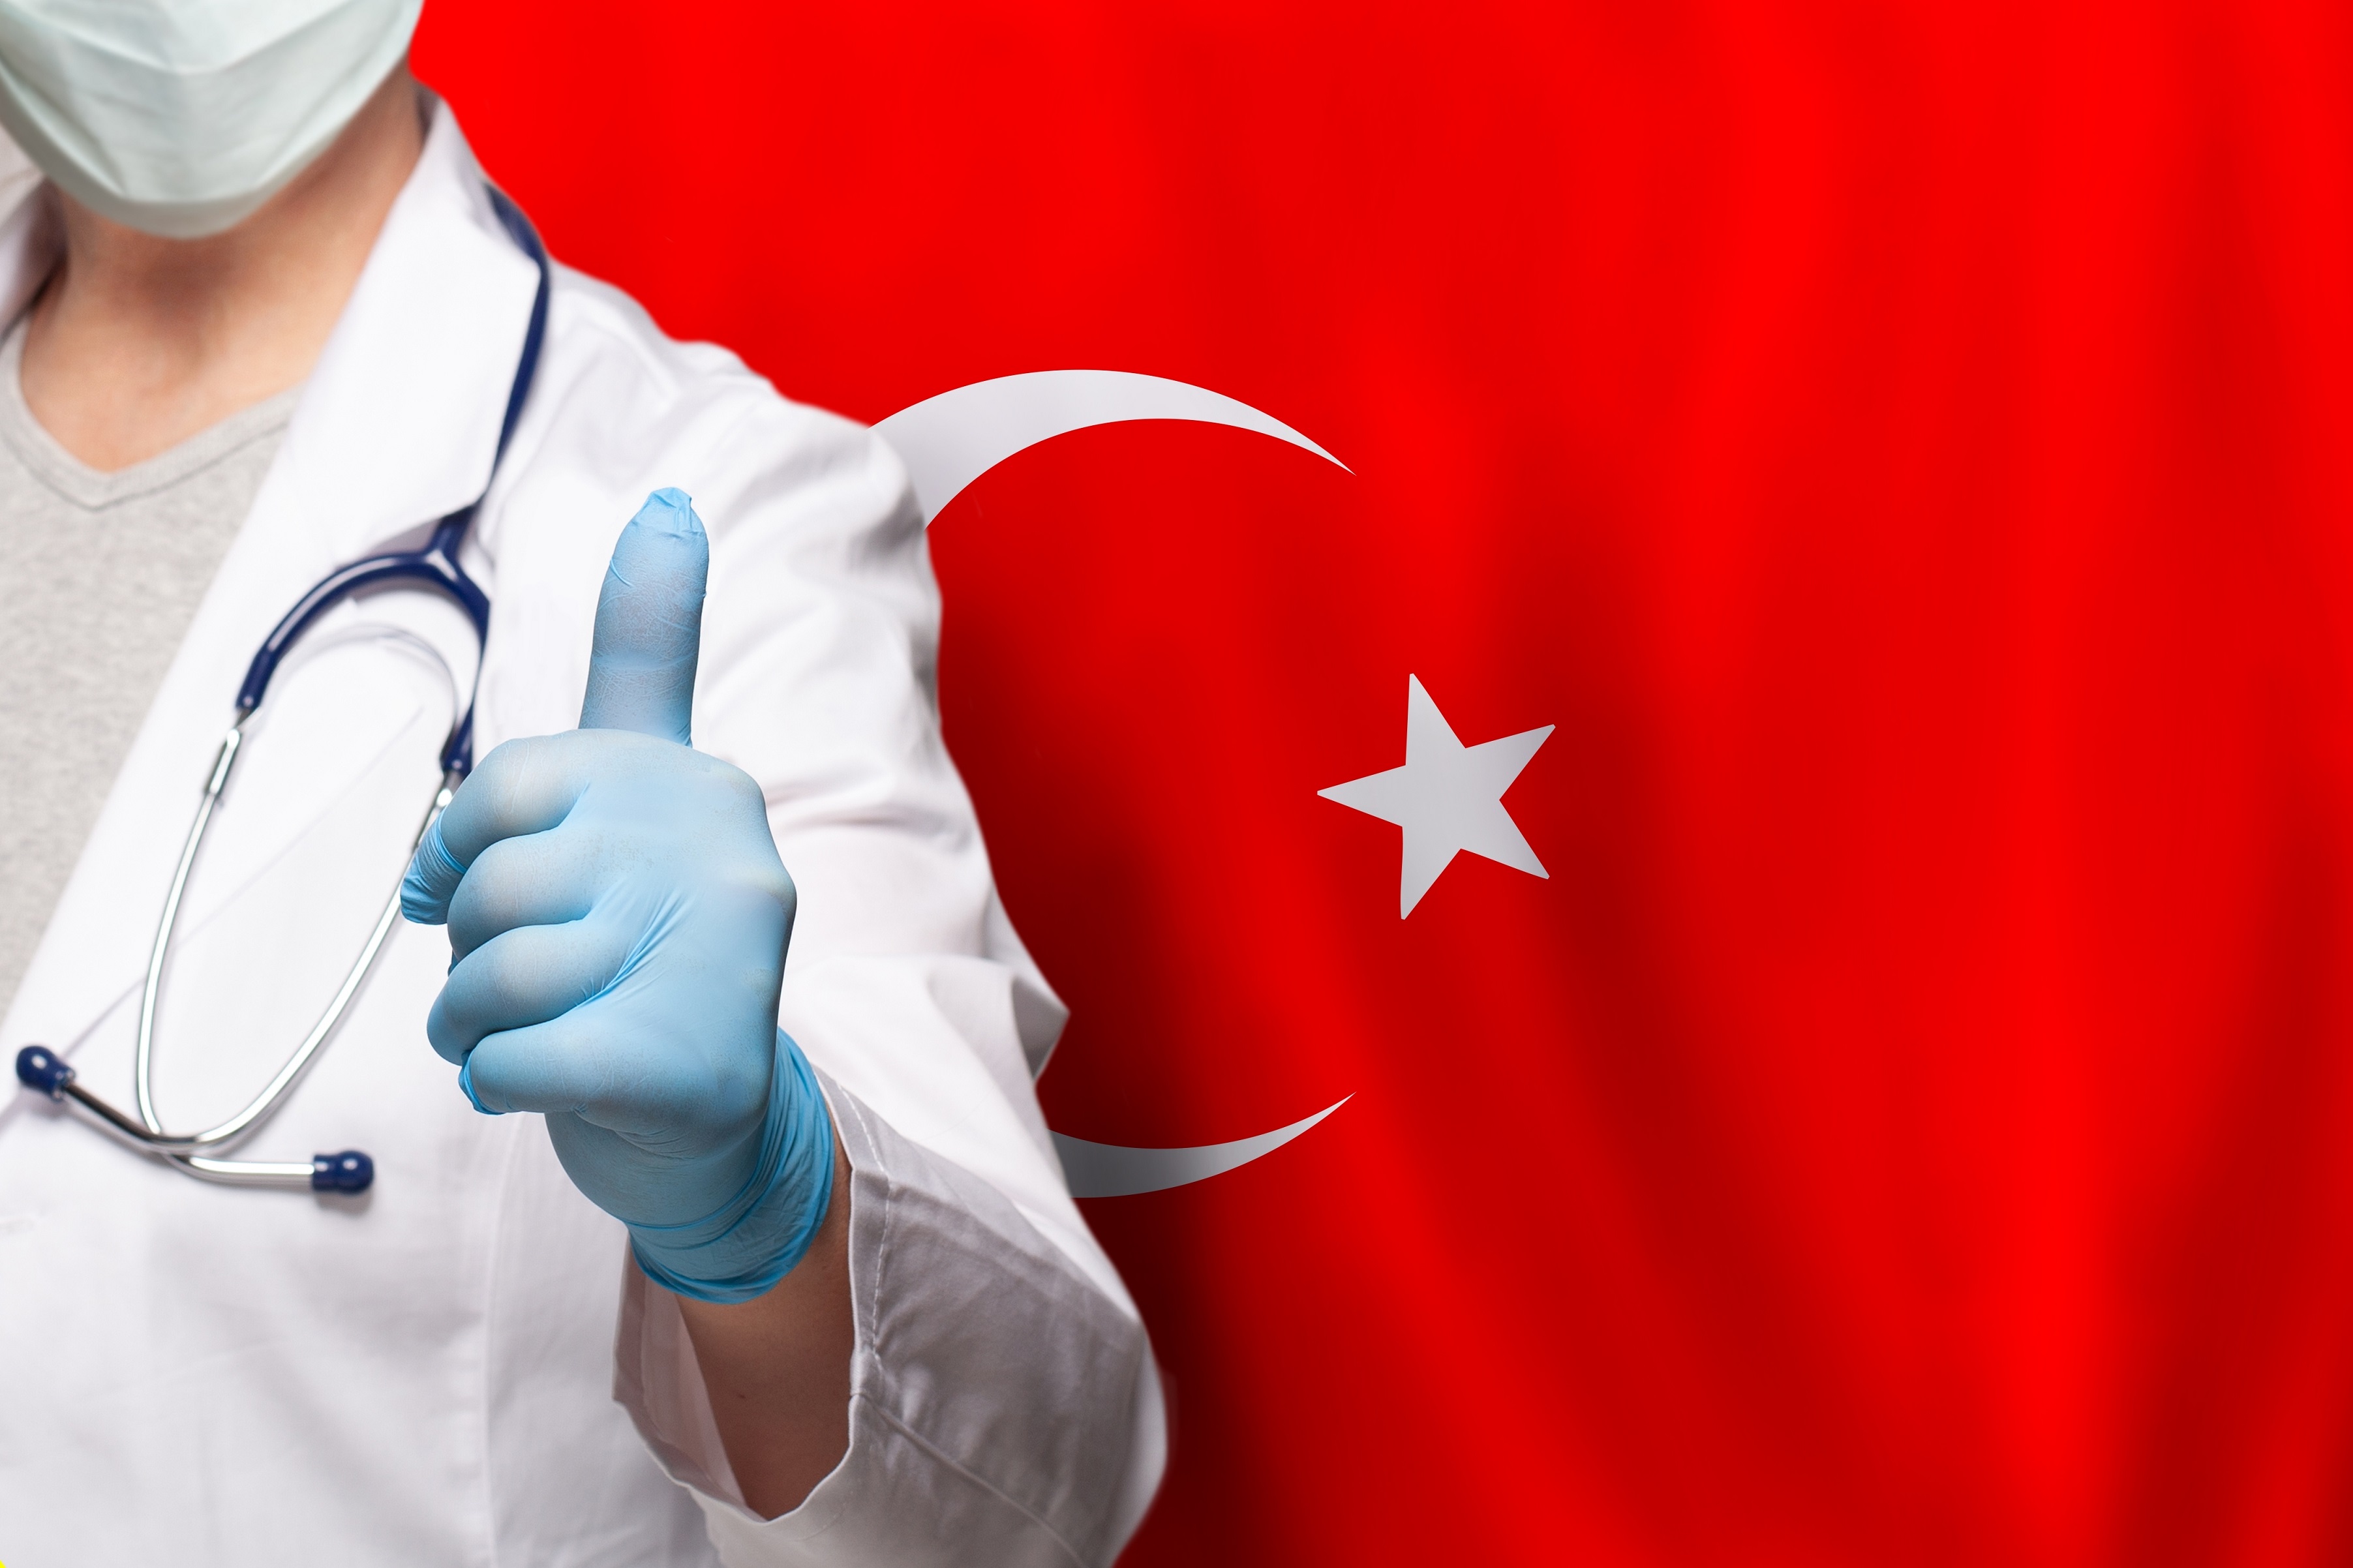 Turecko jako estetická velmoc: Proč jsem se rozhodl pro transplantaci vlasů v této zemi?